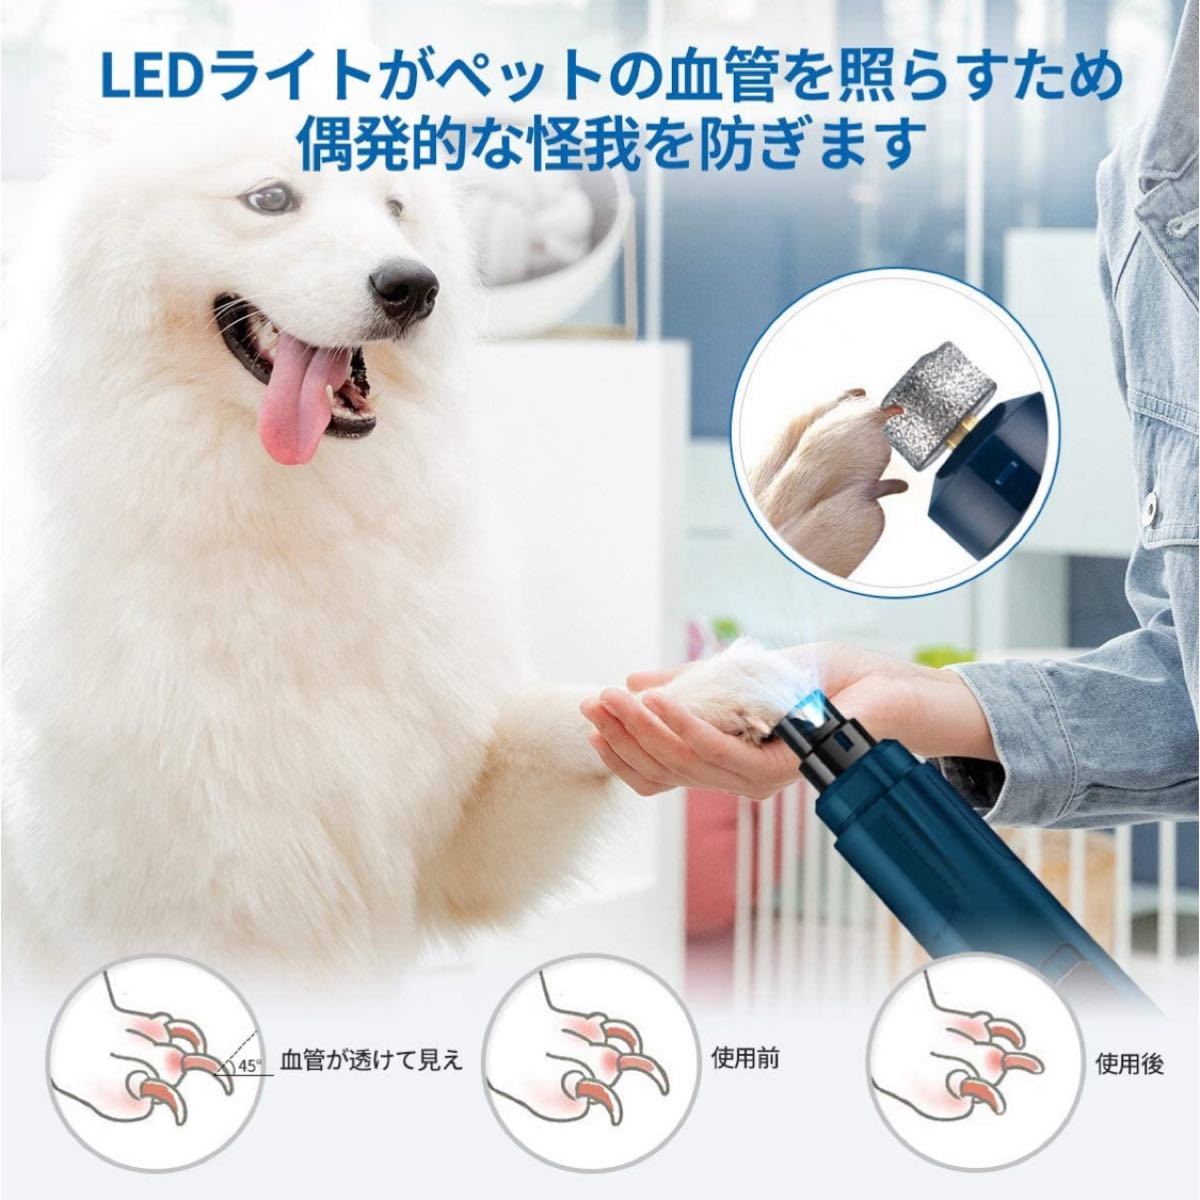 ペット用　爪きり 犬 猫 電動爪切り LEDライト付き 静音設計 低騒音 二段階